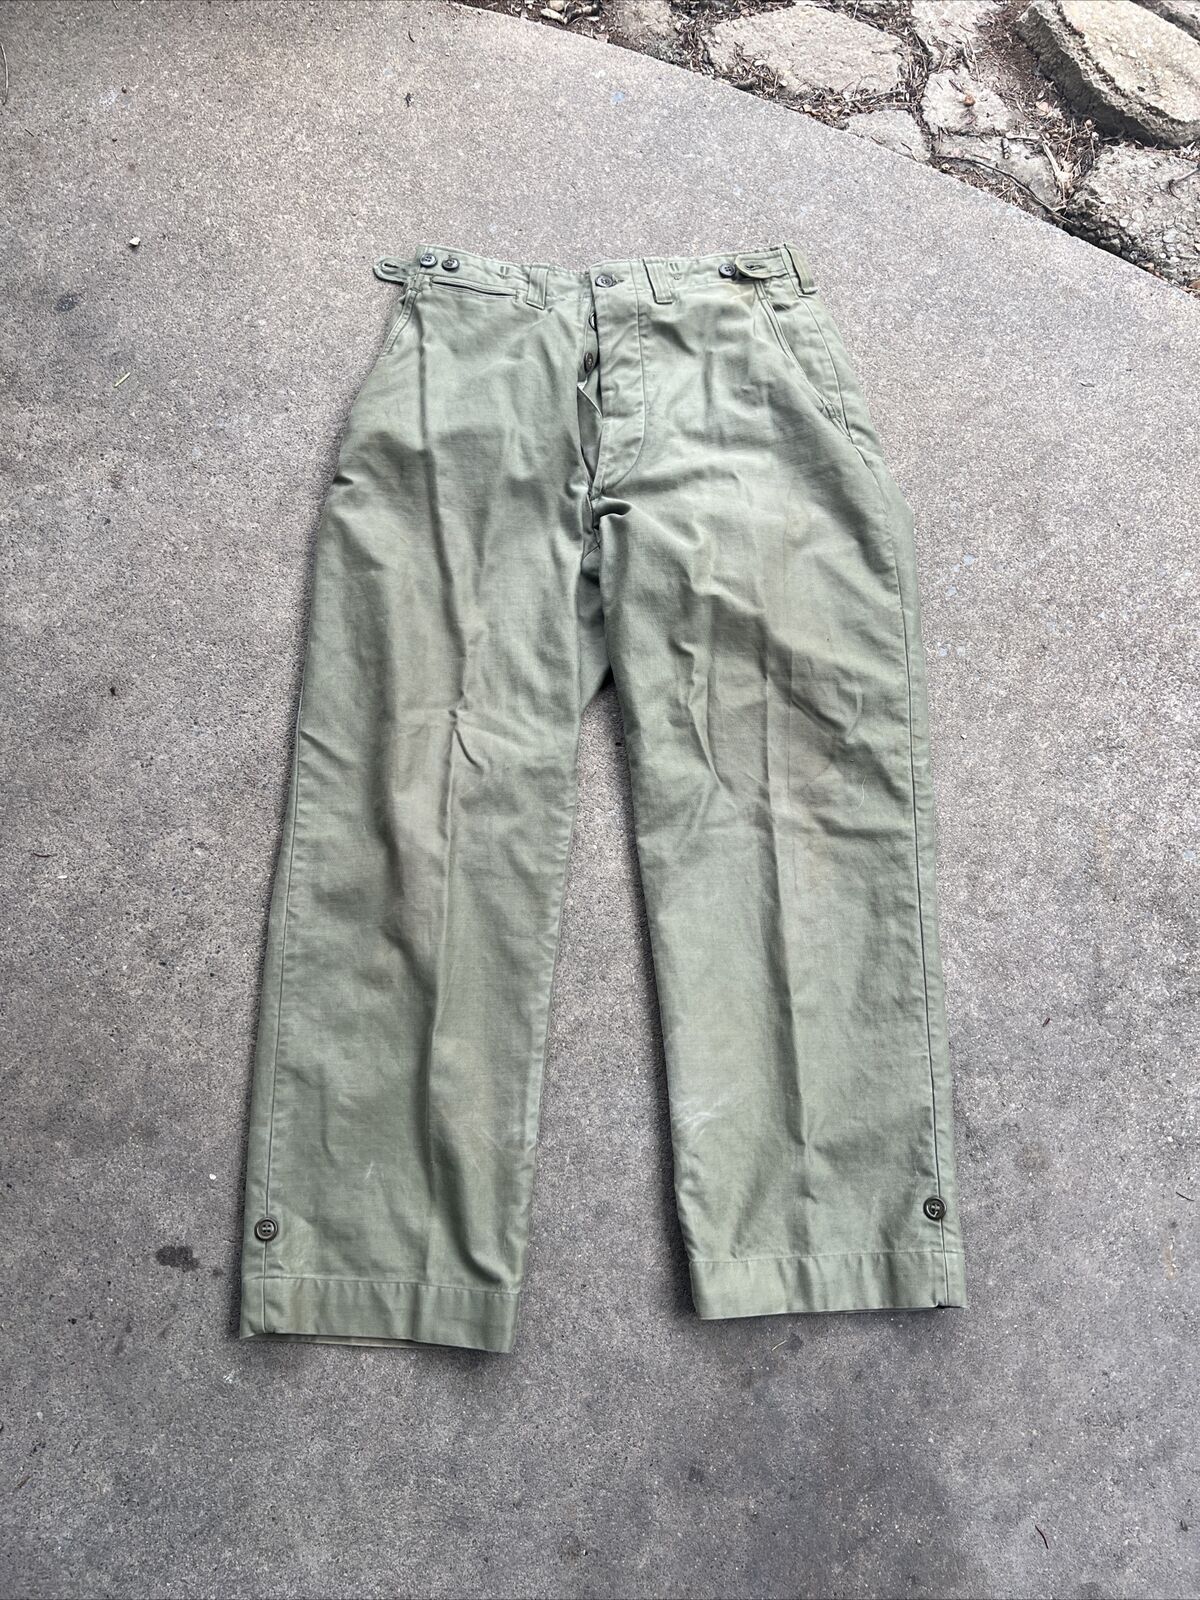 WW2 US Army M-1943 Field Pants Size 32 X 30 (V50